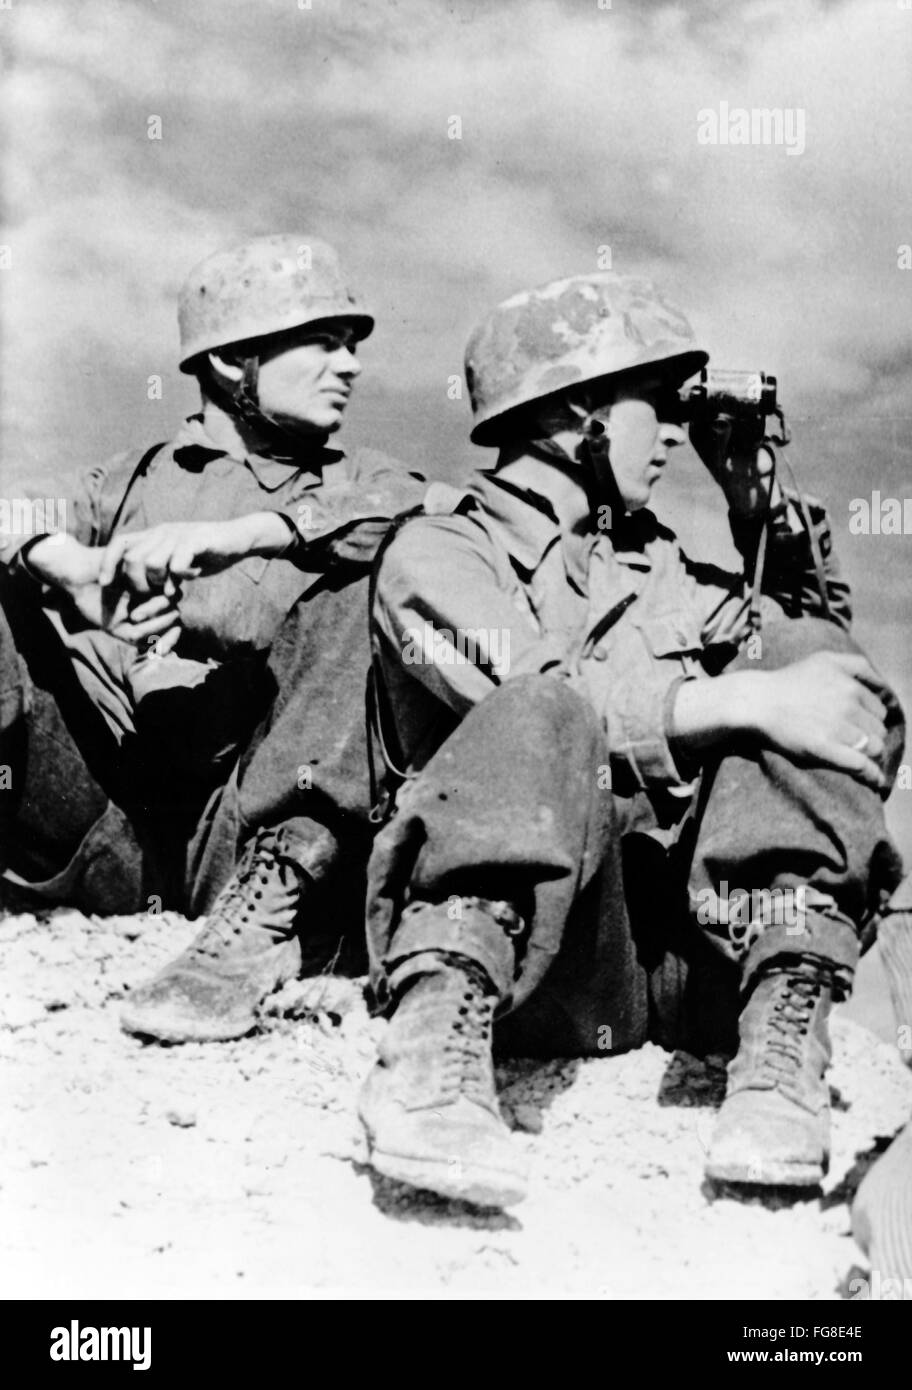 L'immagine della propaganda nazista mostra due paracadutisti della Wehrmacht tedesca in Tunisia. La foto è stata scattata nel marzo 1943. Fotoarchiv für Zeitgeschichtee - Foto Stock